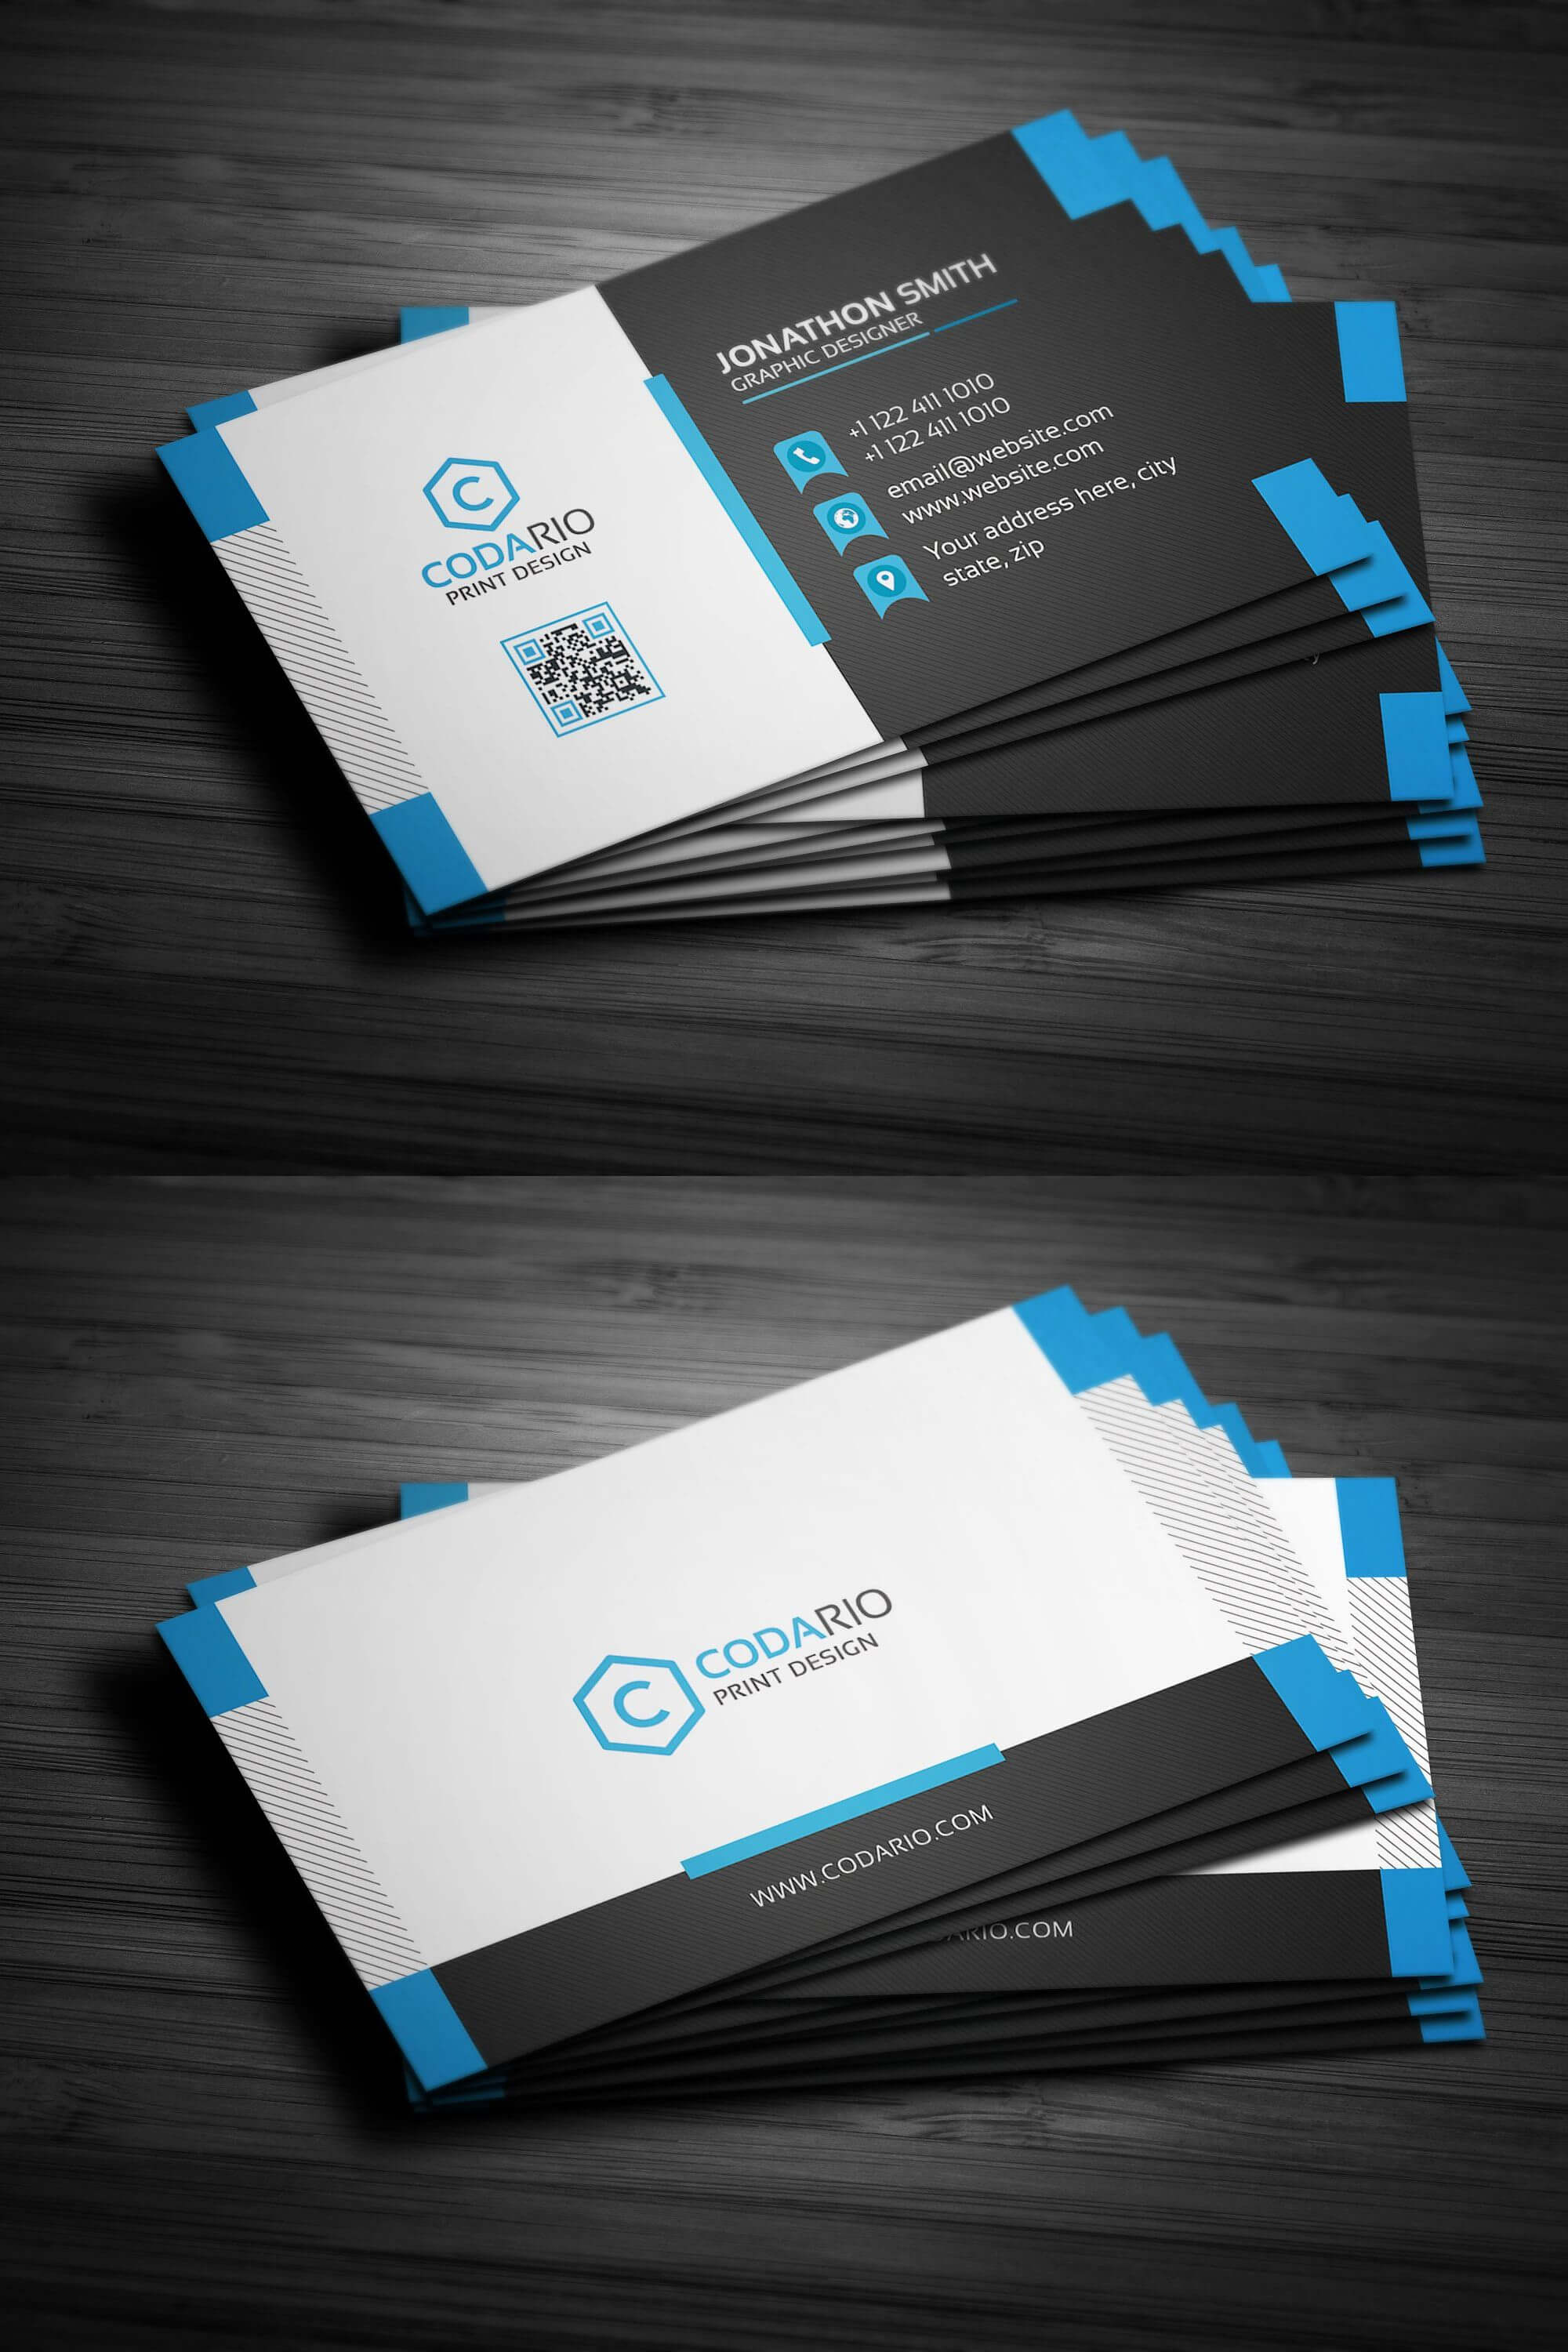 Modern Creative Business Card Template Psd | Business Card For Creative Business Card Templates Psd